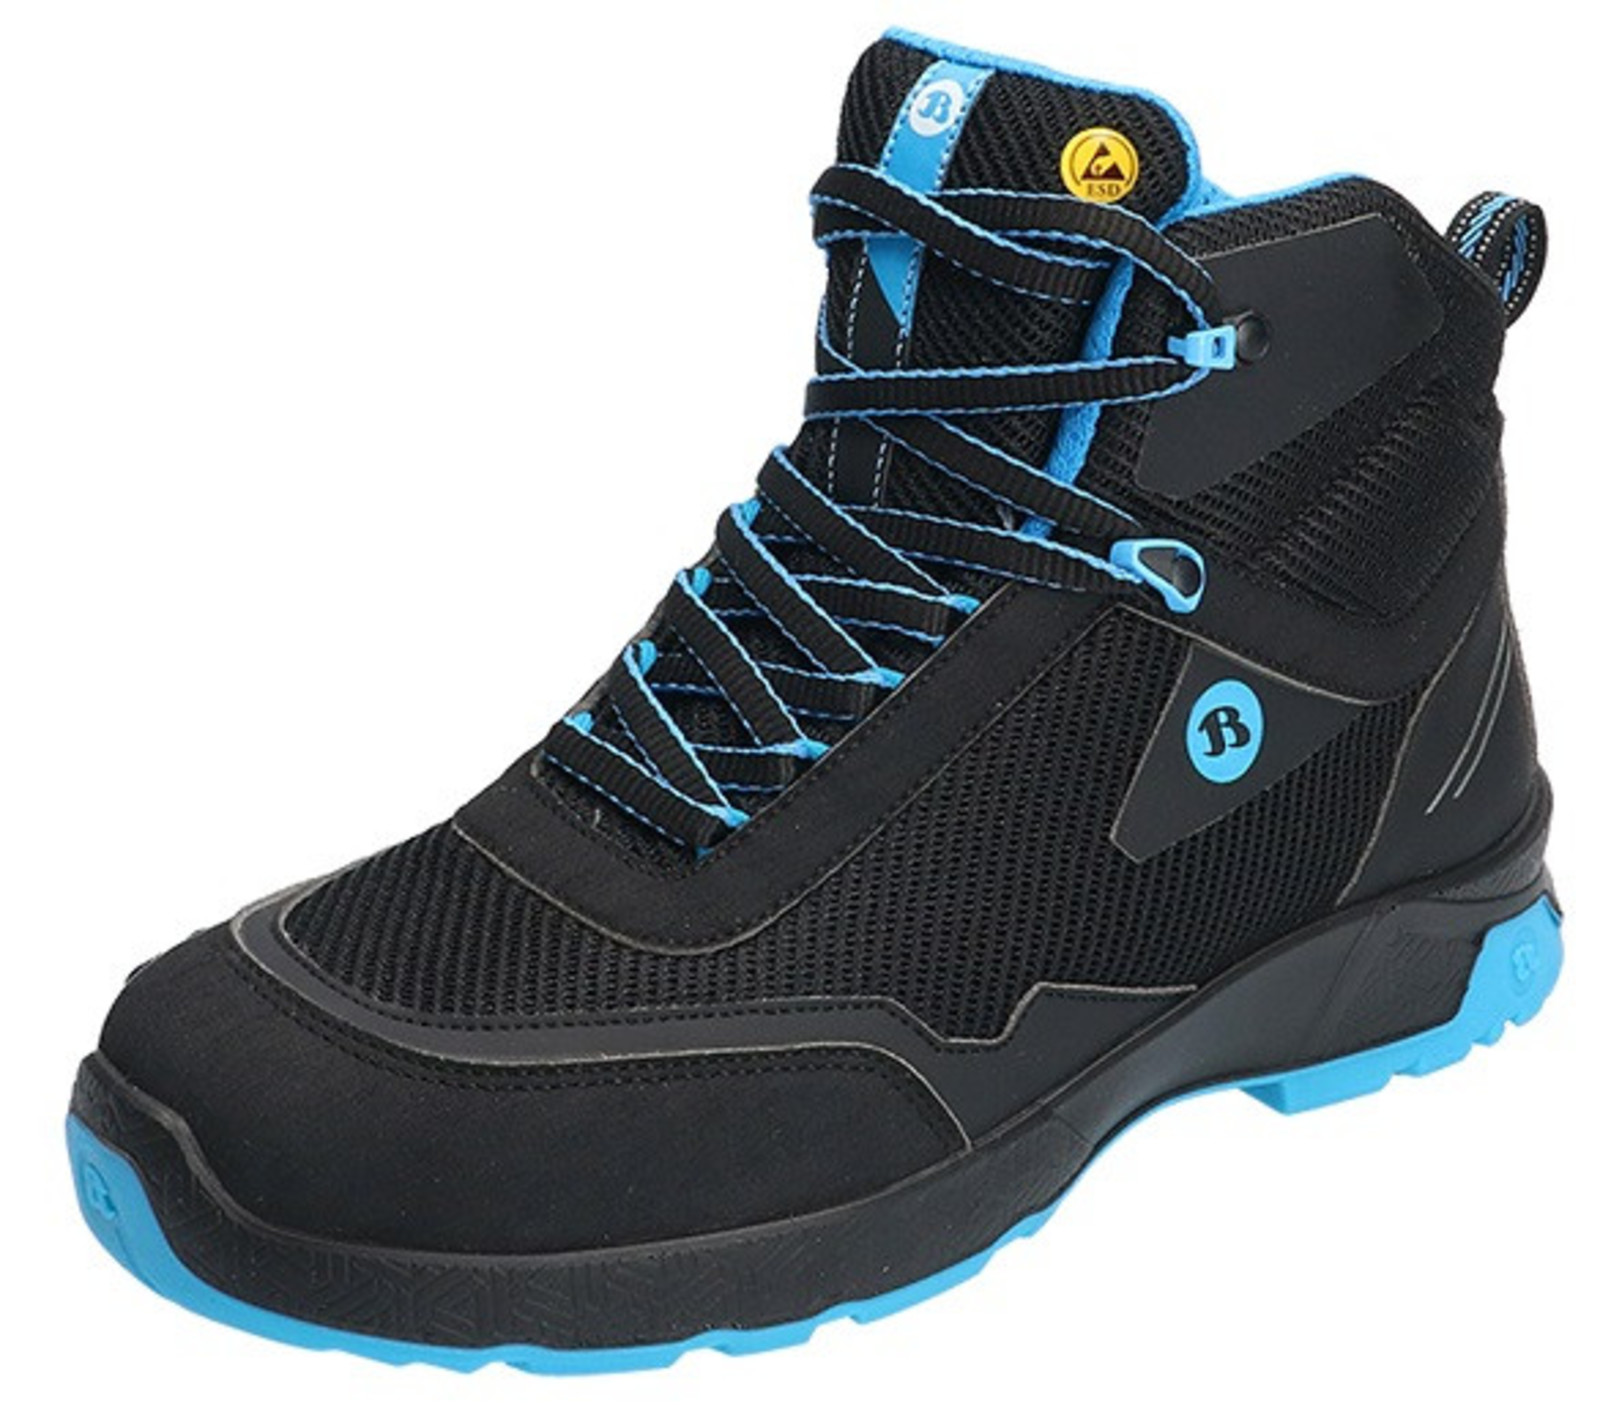 Bezpečnostná členková obuv Baťa Summ One S3 ESD - veľkosť: 40, farba: čierna